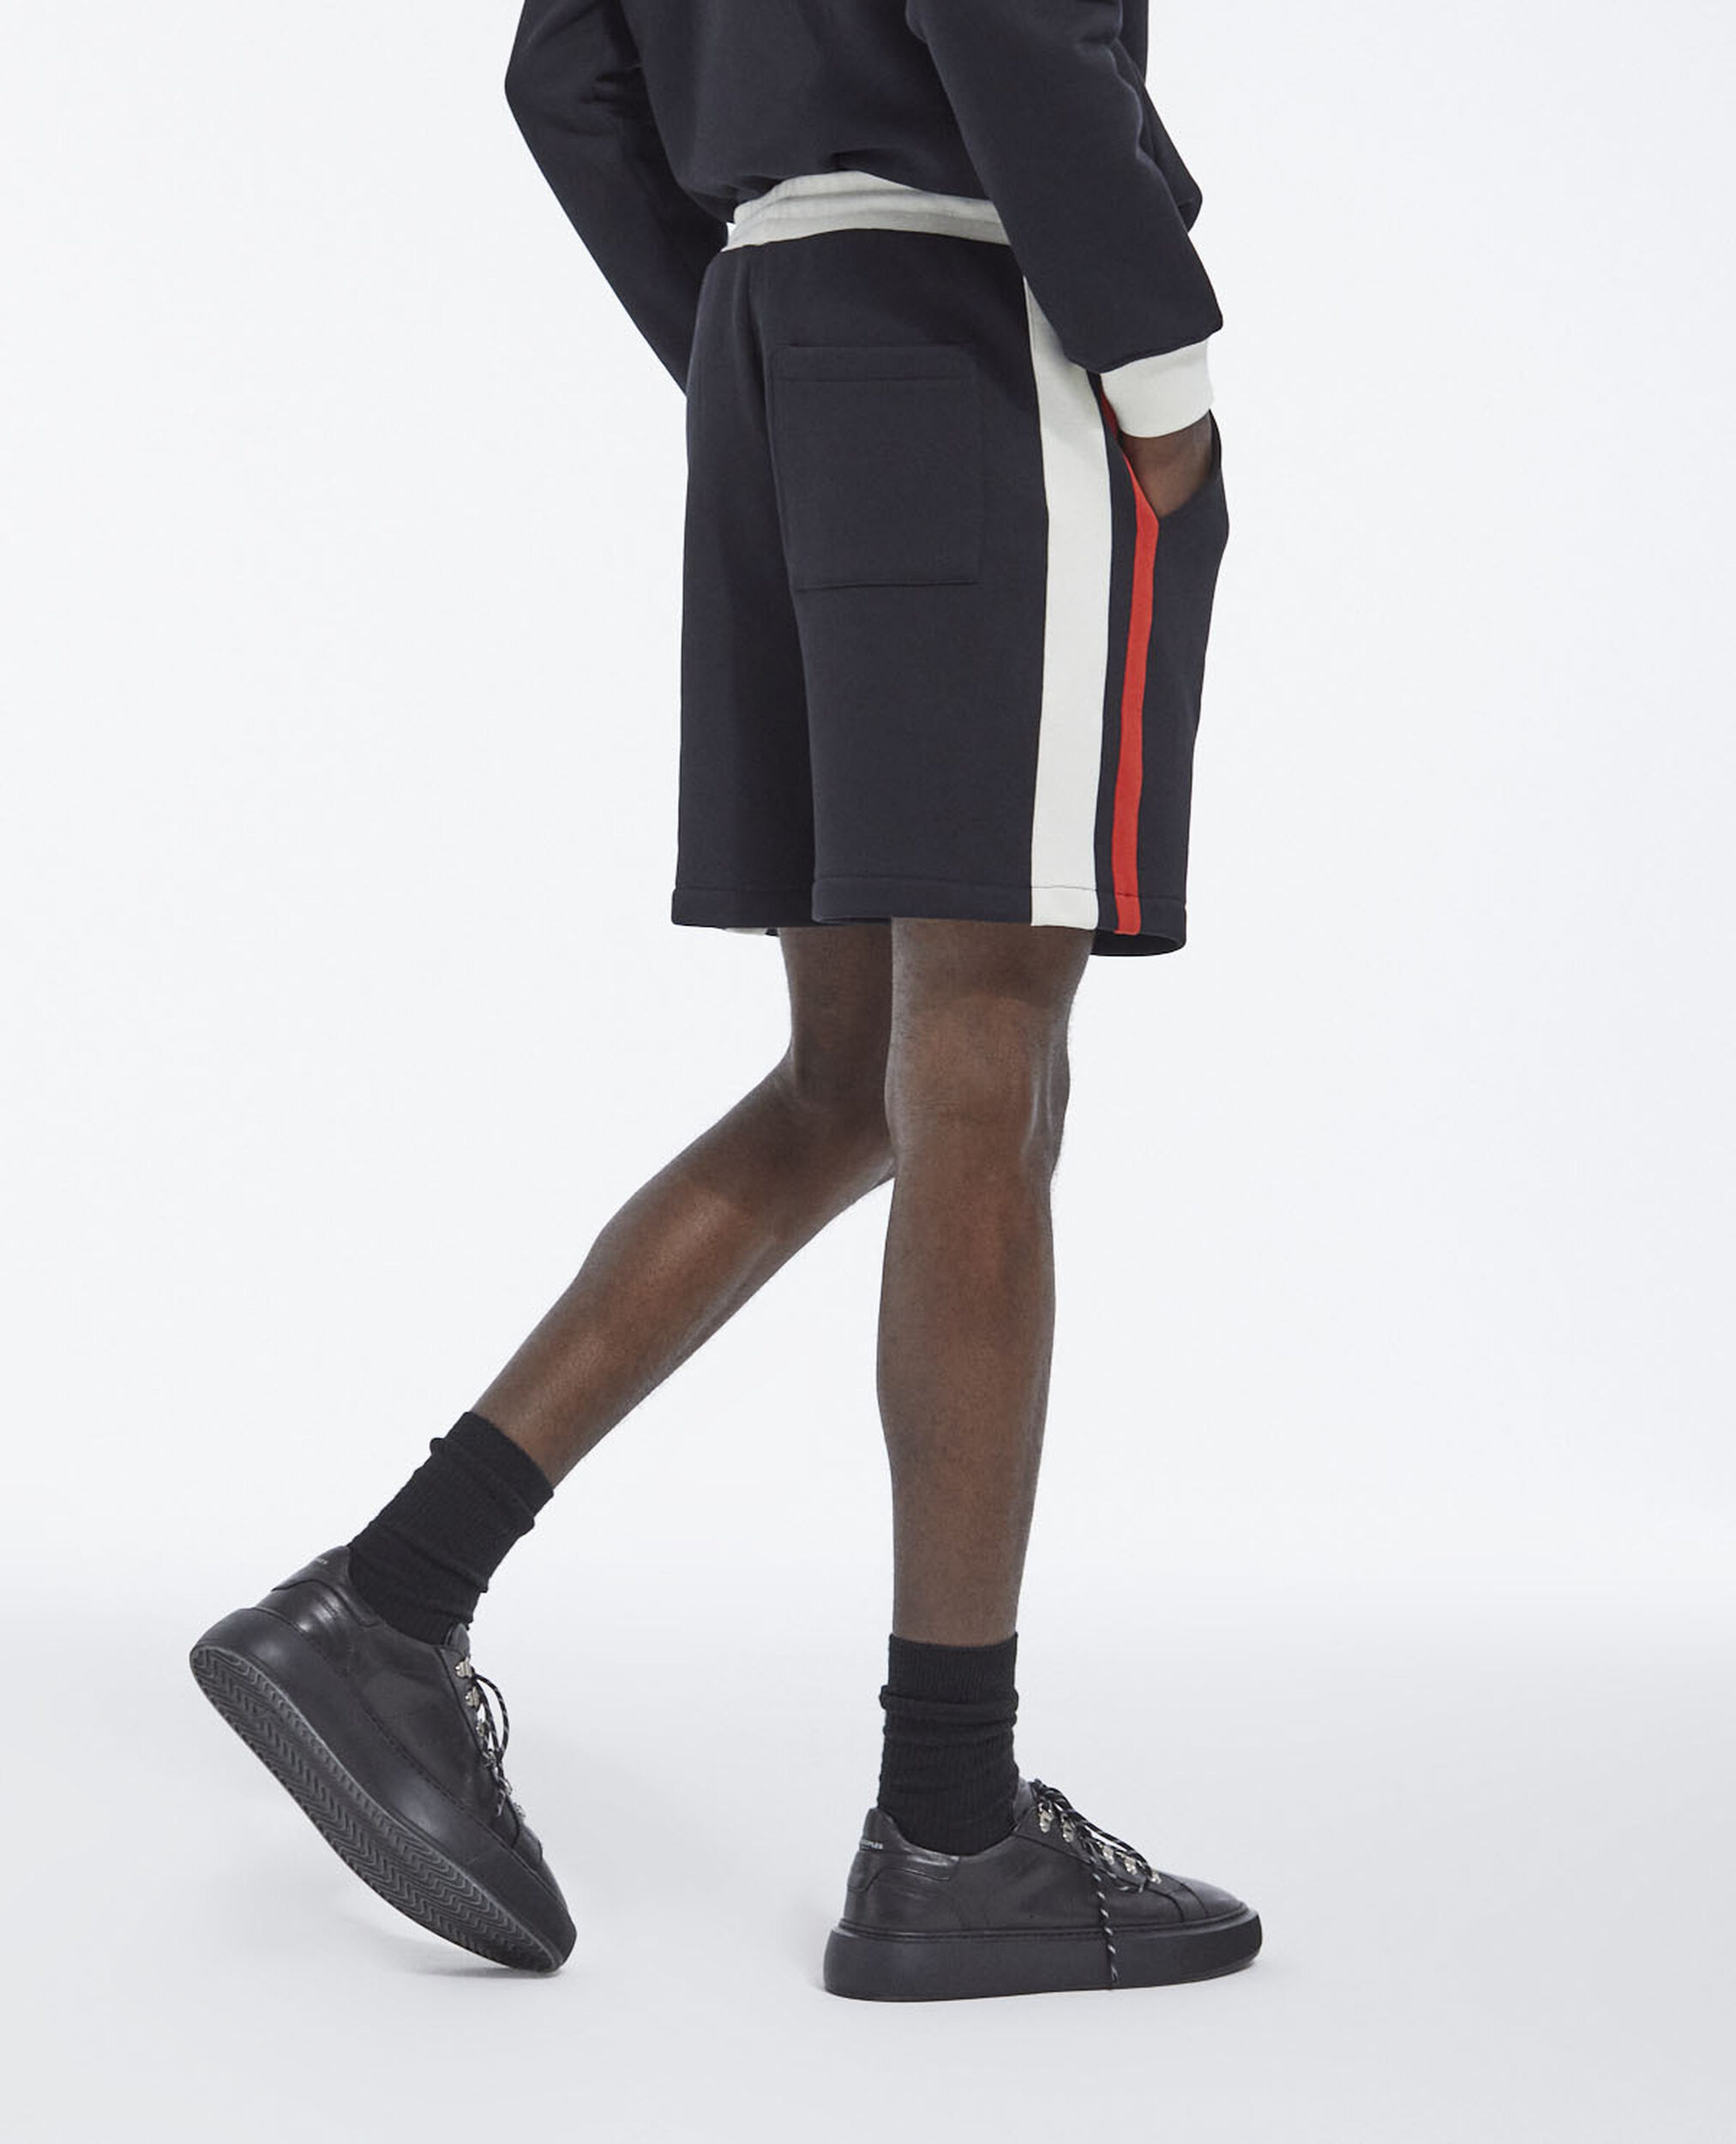 Black fleece shorts with red side stripes, BLACK ECRU RED, hi-res image number null